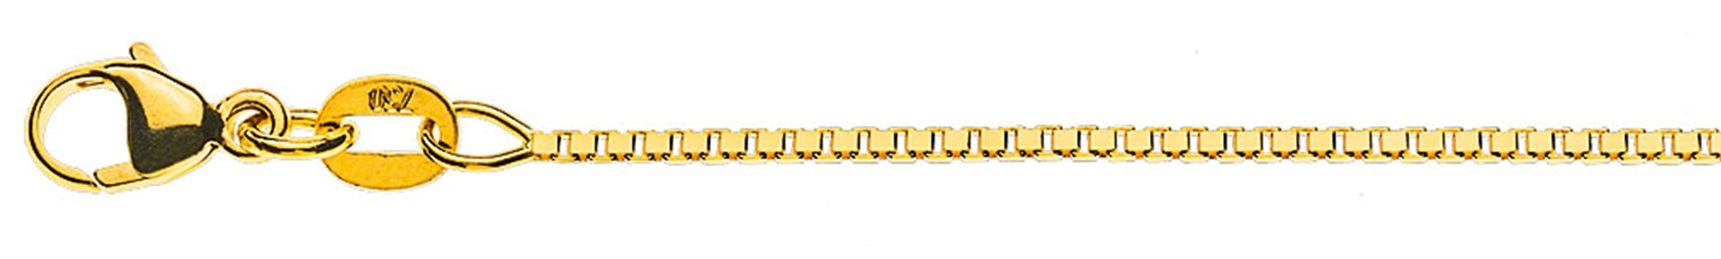 AURONOS Prestige Halskette Gelbgold 18K Venezianerkette diamantiert 40cm 1.1mm